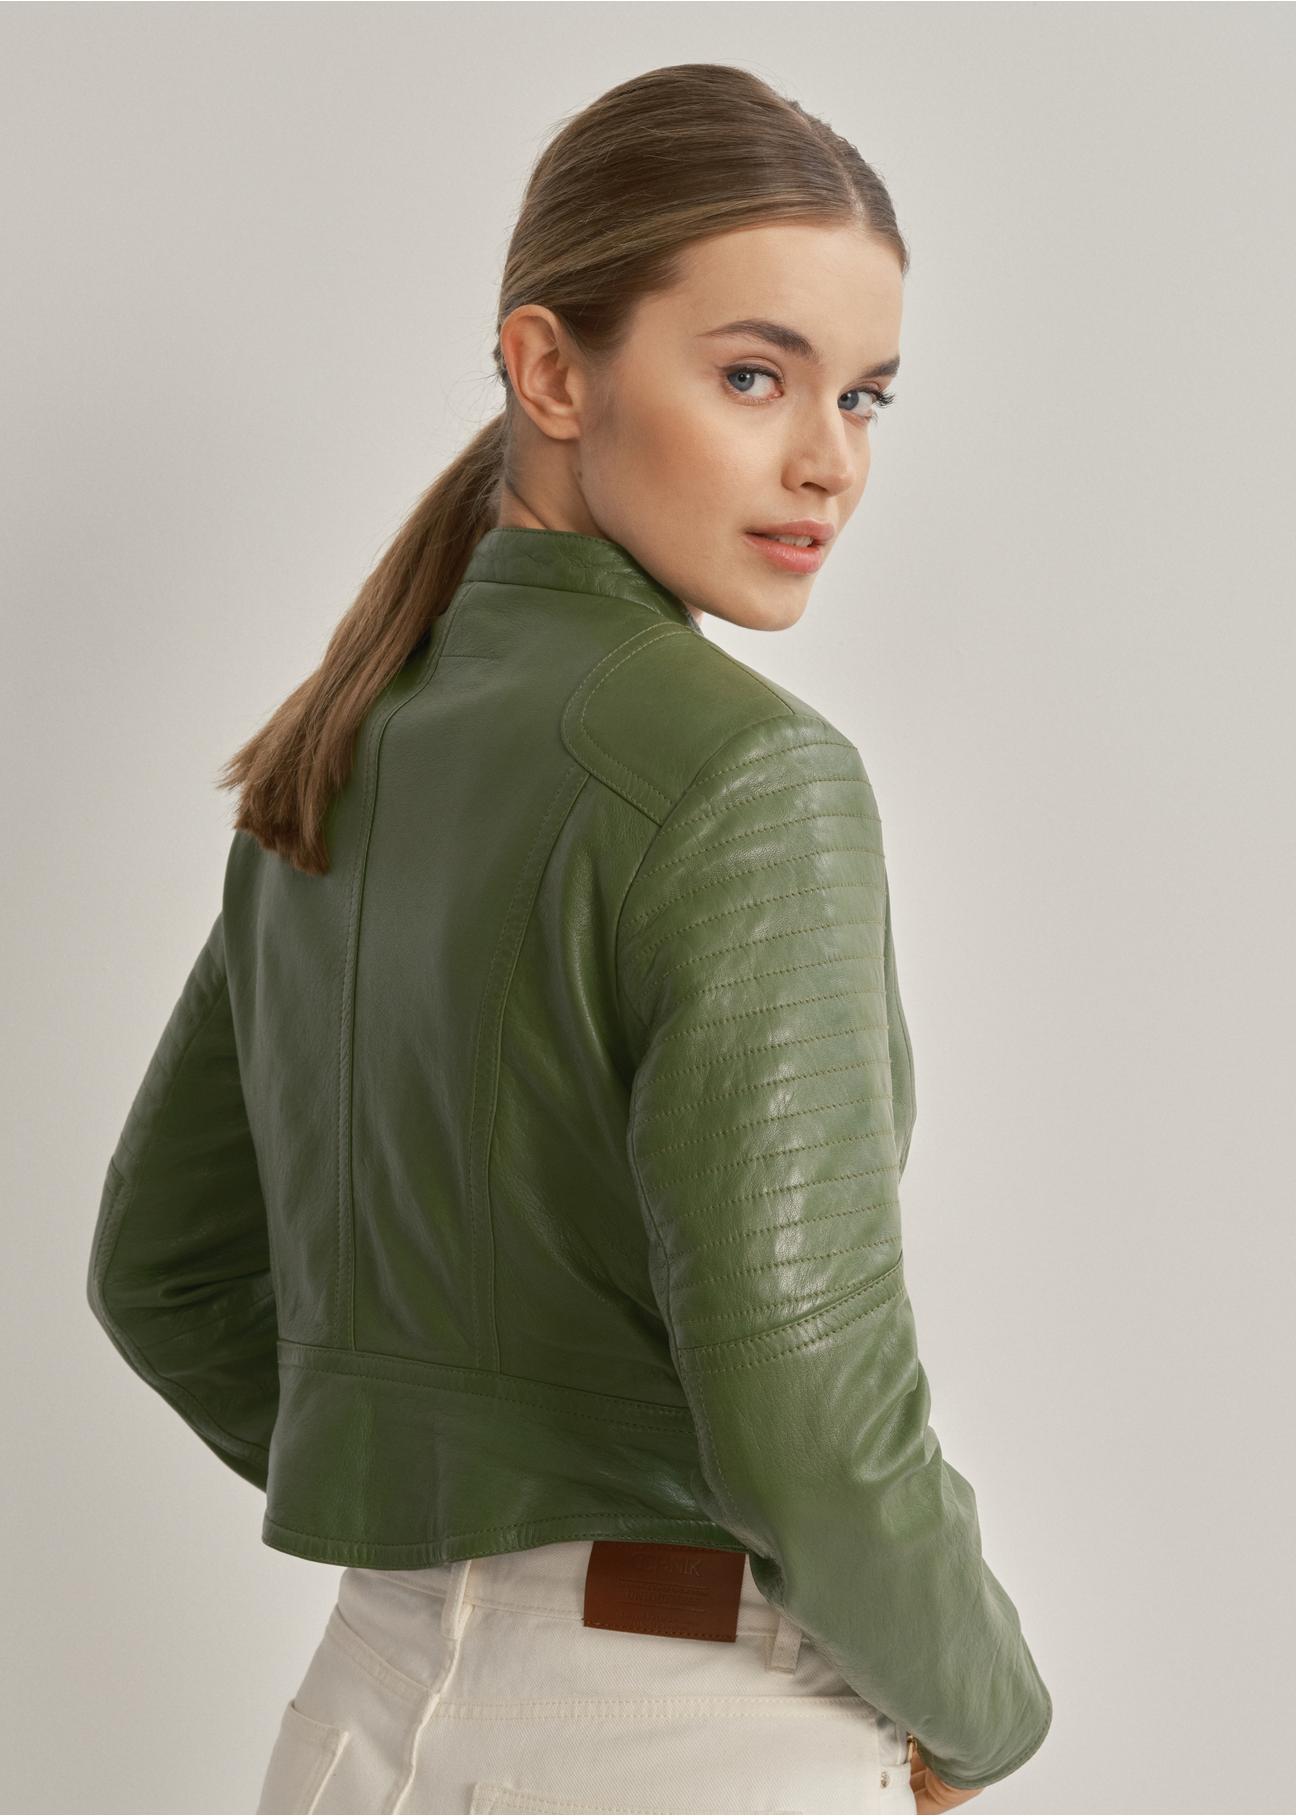 Zielona kurtka damska ze skóry naturalnej KURDS-0321A-1292(W24)